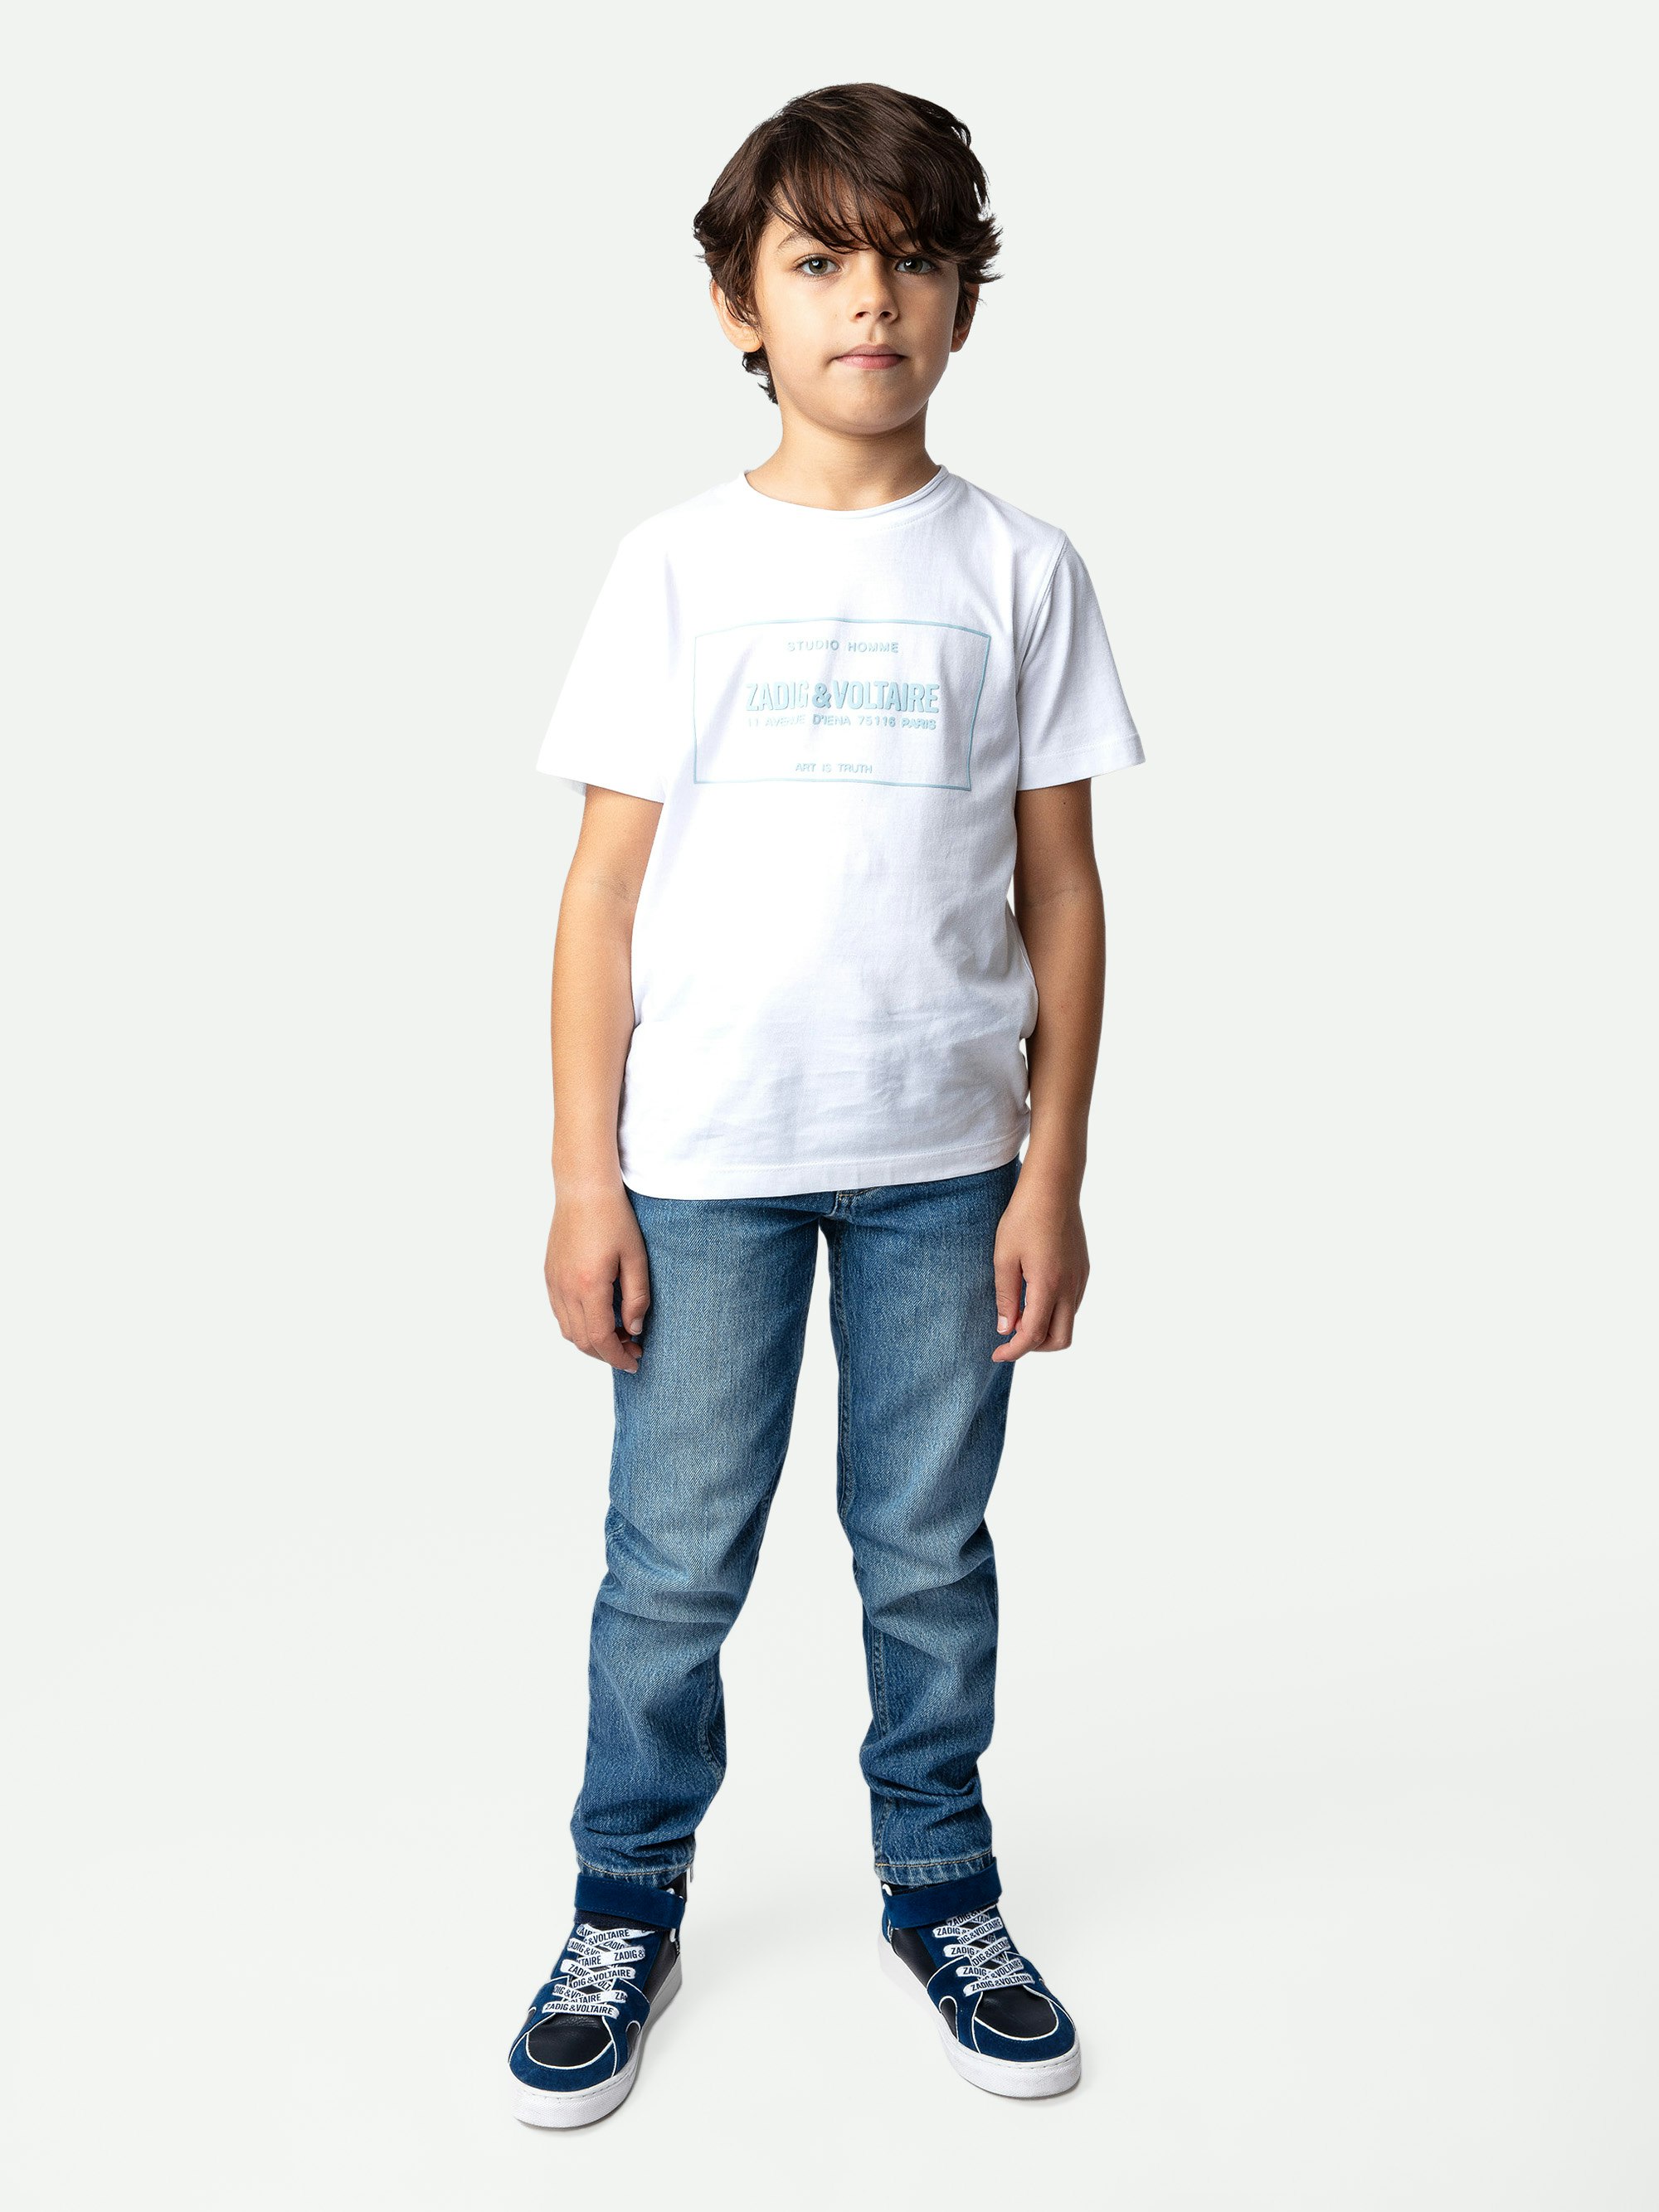 Camiseta Toby Niño - Camiseta blanca de jersey de algodón para niño con mangas cortas y escudo decorativo.